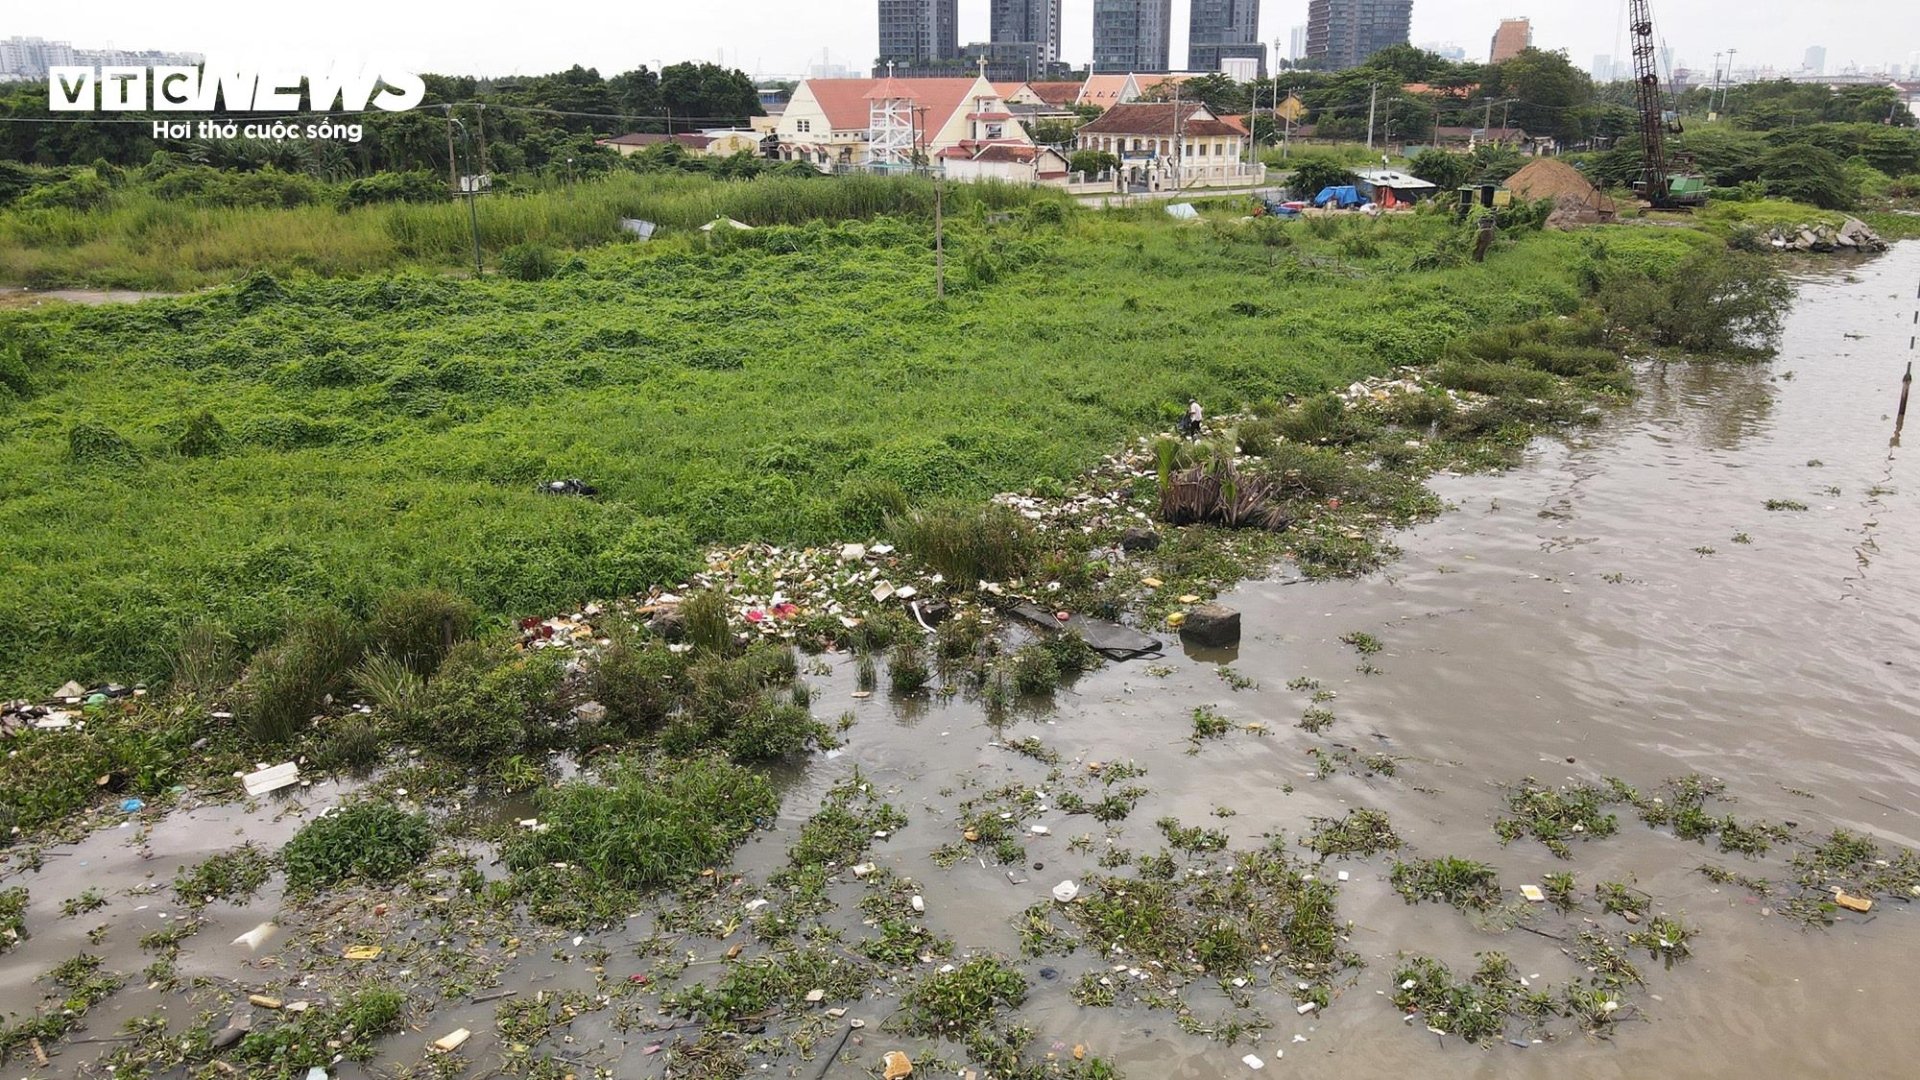 Cảnh đối lập 2 bờ sông Sài Gòn: Nơi sầm uất hiện đại, chỗ cỏ dại mọc um tùm - 13